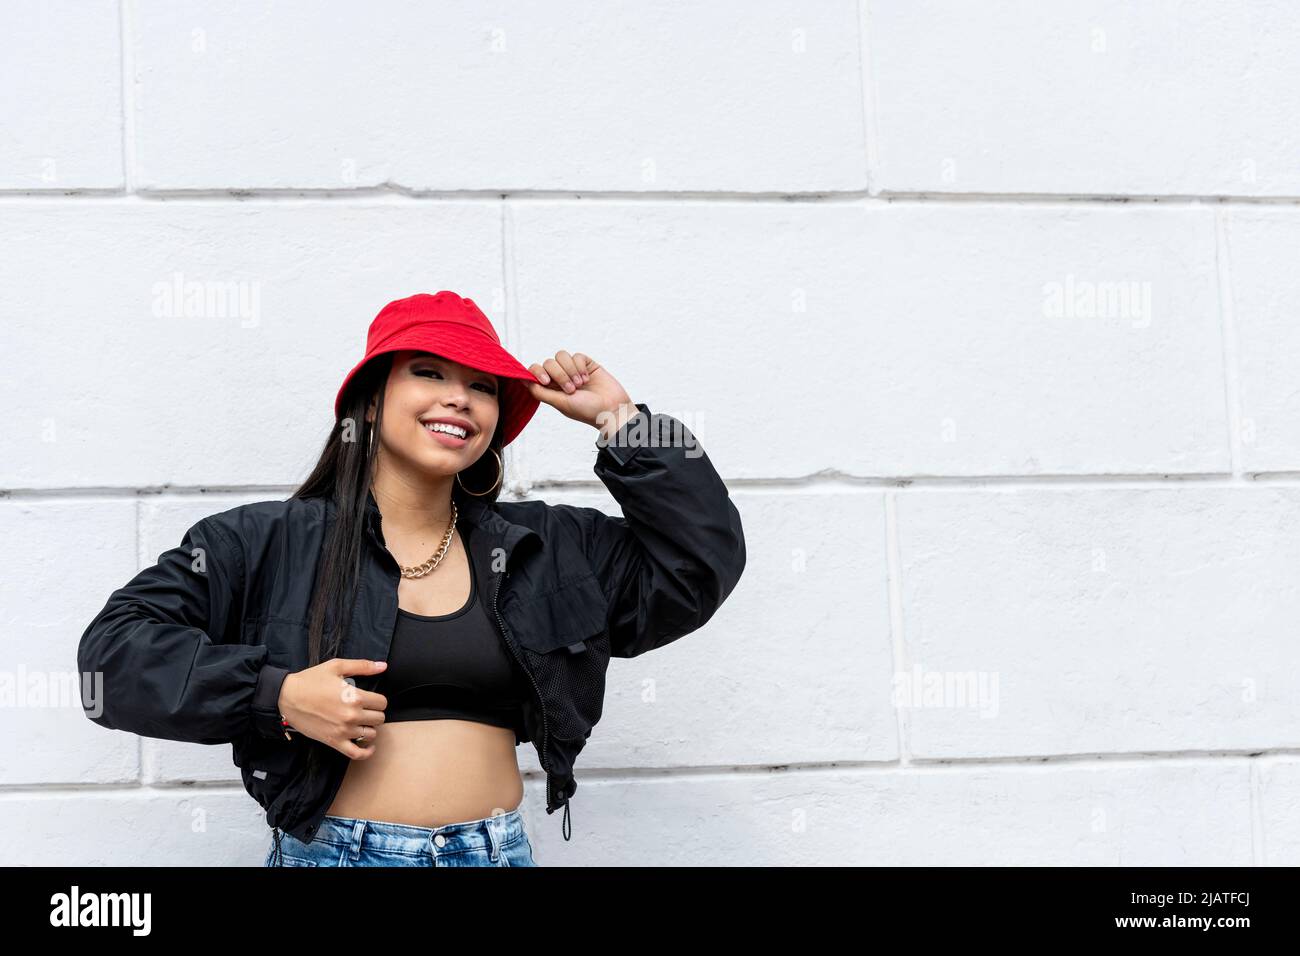 Junge lateinische Frau Hip-Hop tanzen auf der Straße mit einem roten Hut, Panama, Mittelamerika - Stock Foto Stockfoto